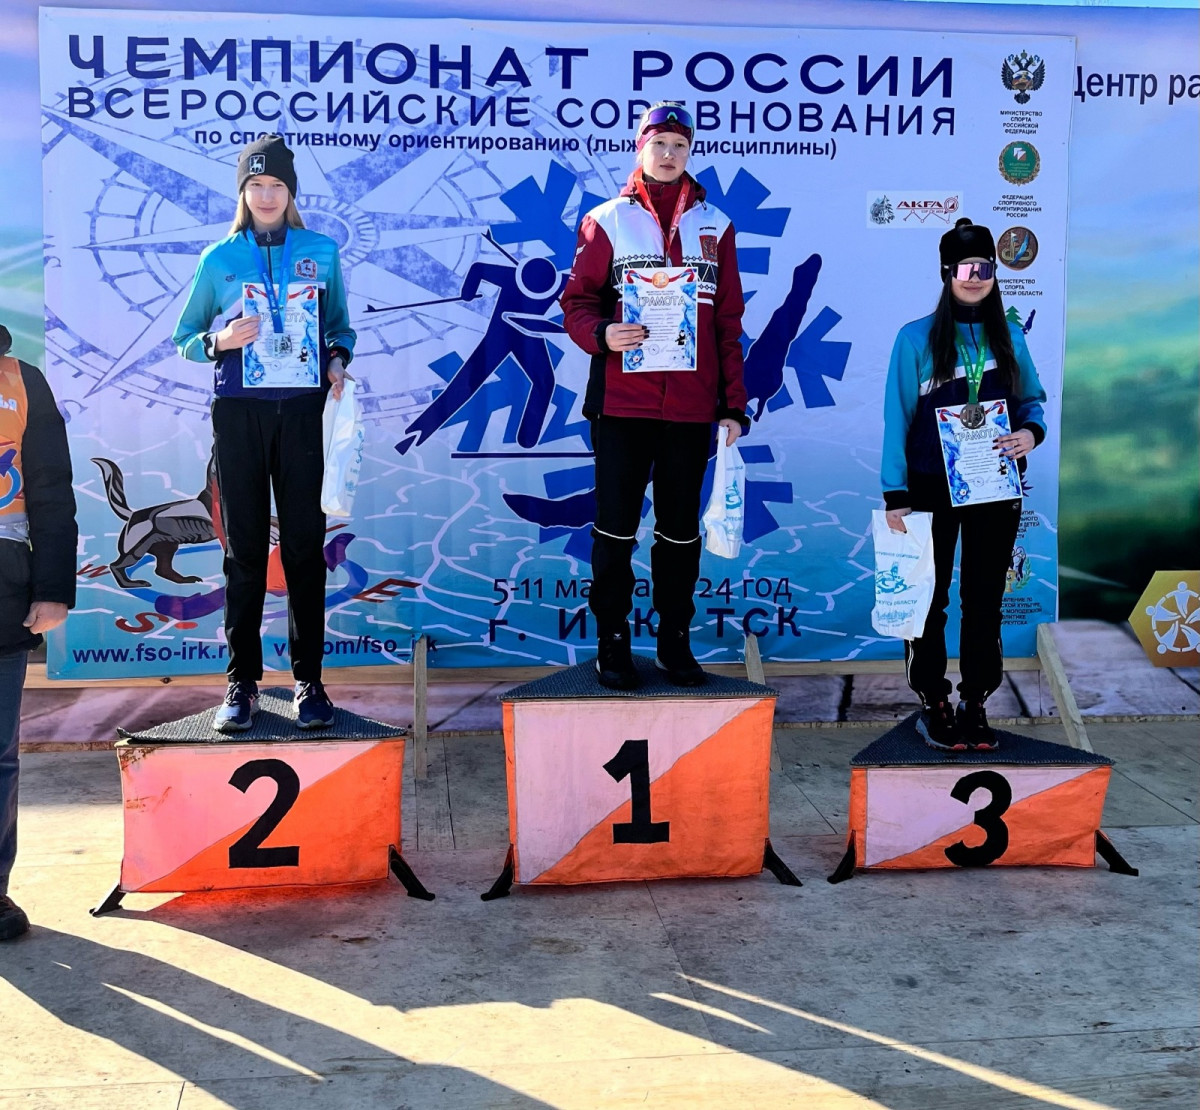 Нижегородцы завоевали 13 медалей на Всероссийских соревнованиях по спортивному ориентированию